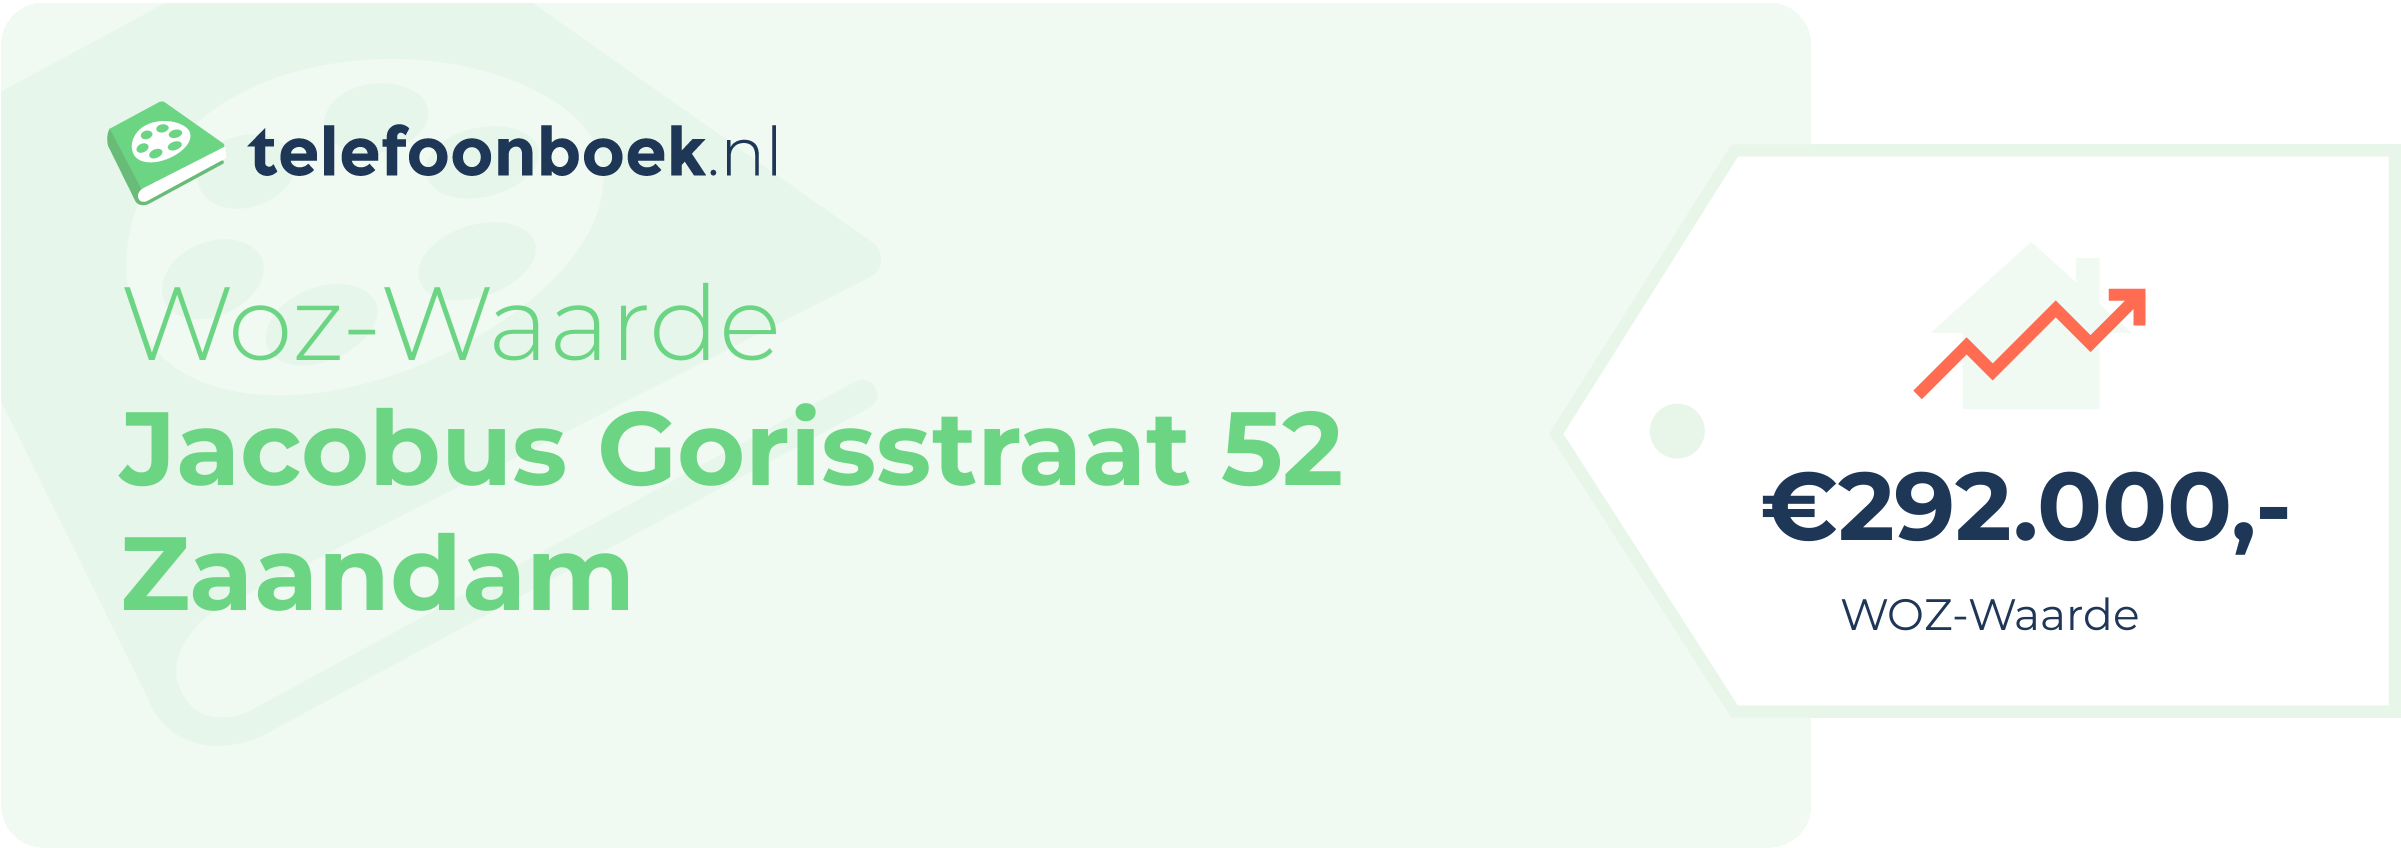 WOZ-waarde Jacobus Gorisstraat 52 Zaandam